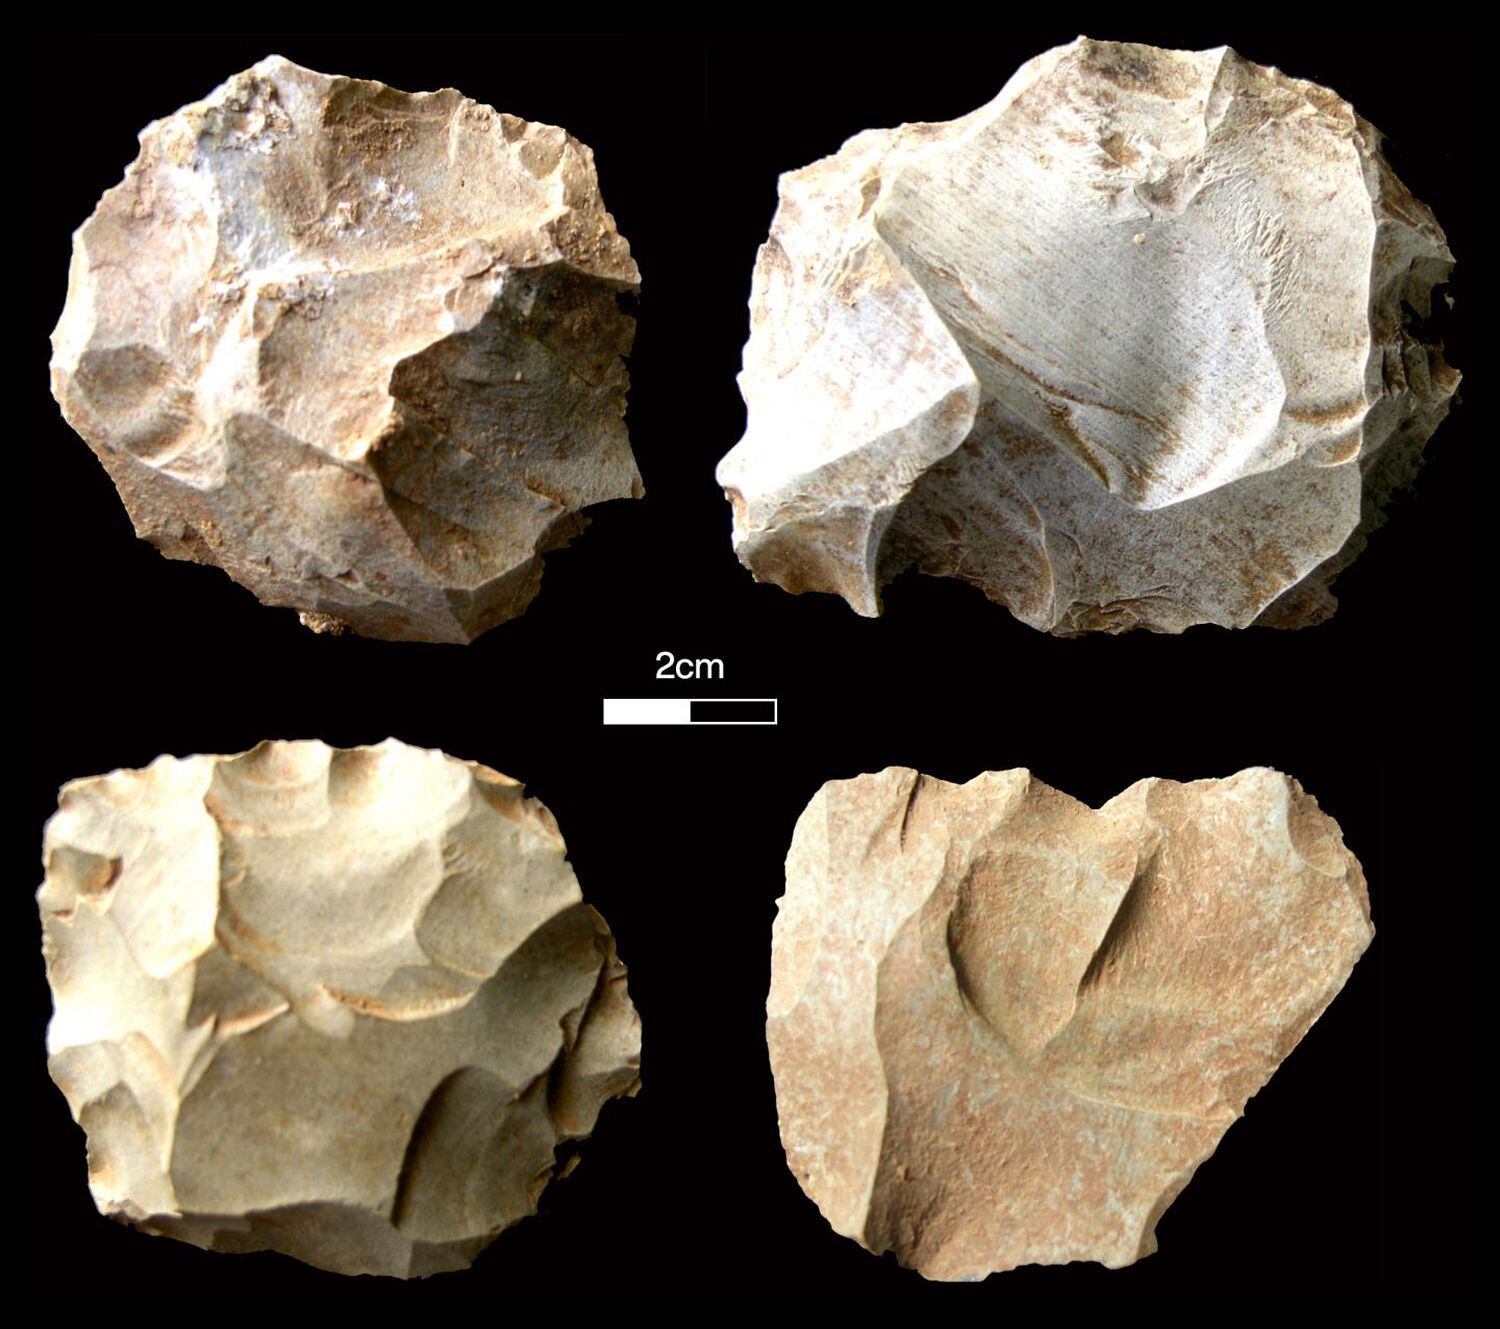 Herramientas de piedra encontradas en el yacimiento de Dhaba, en la India